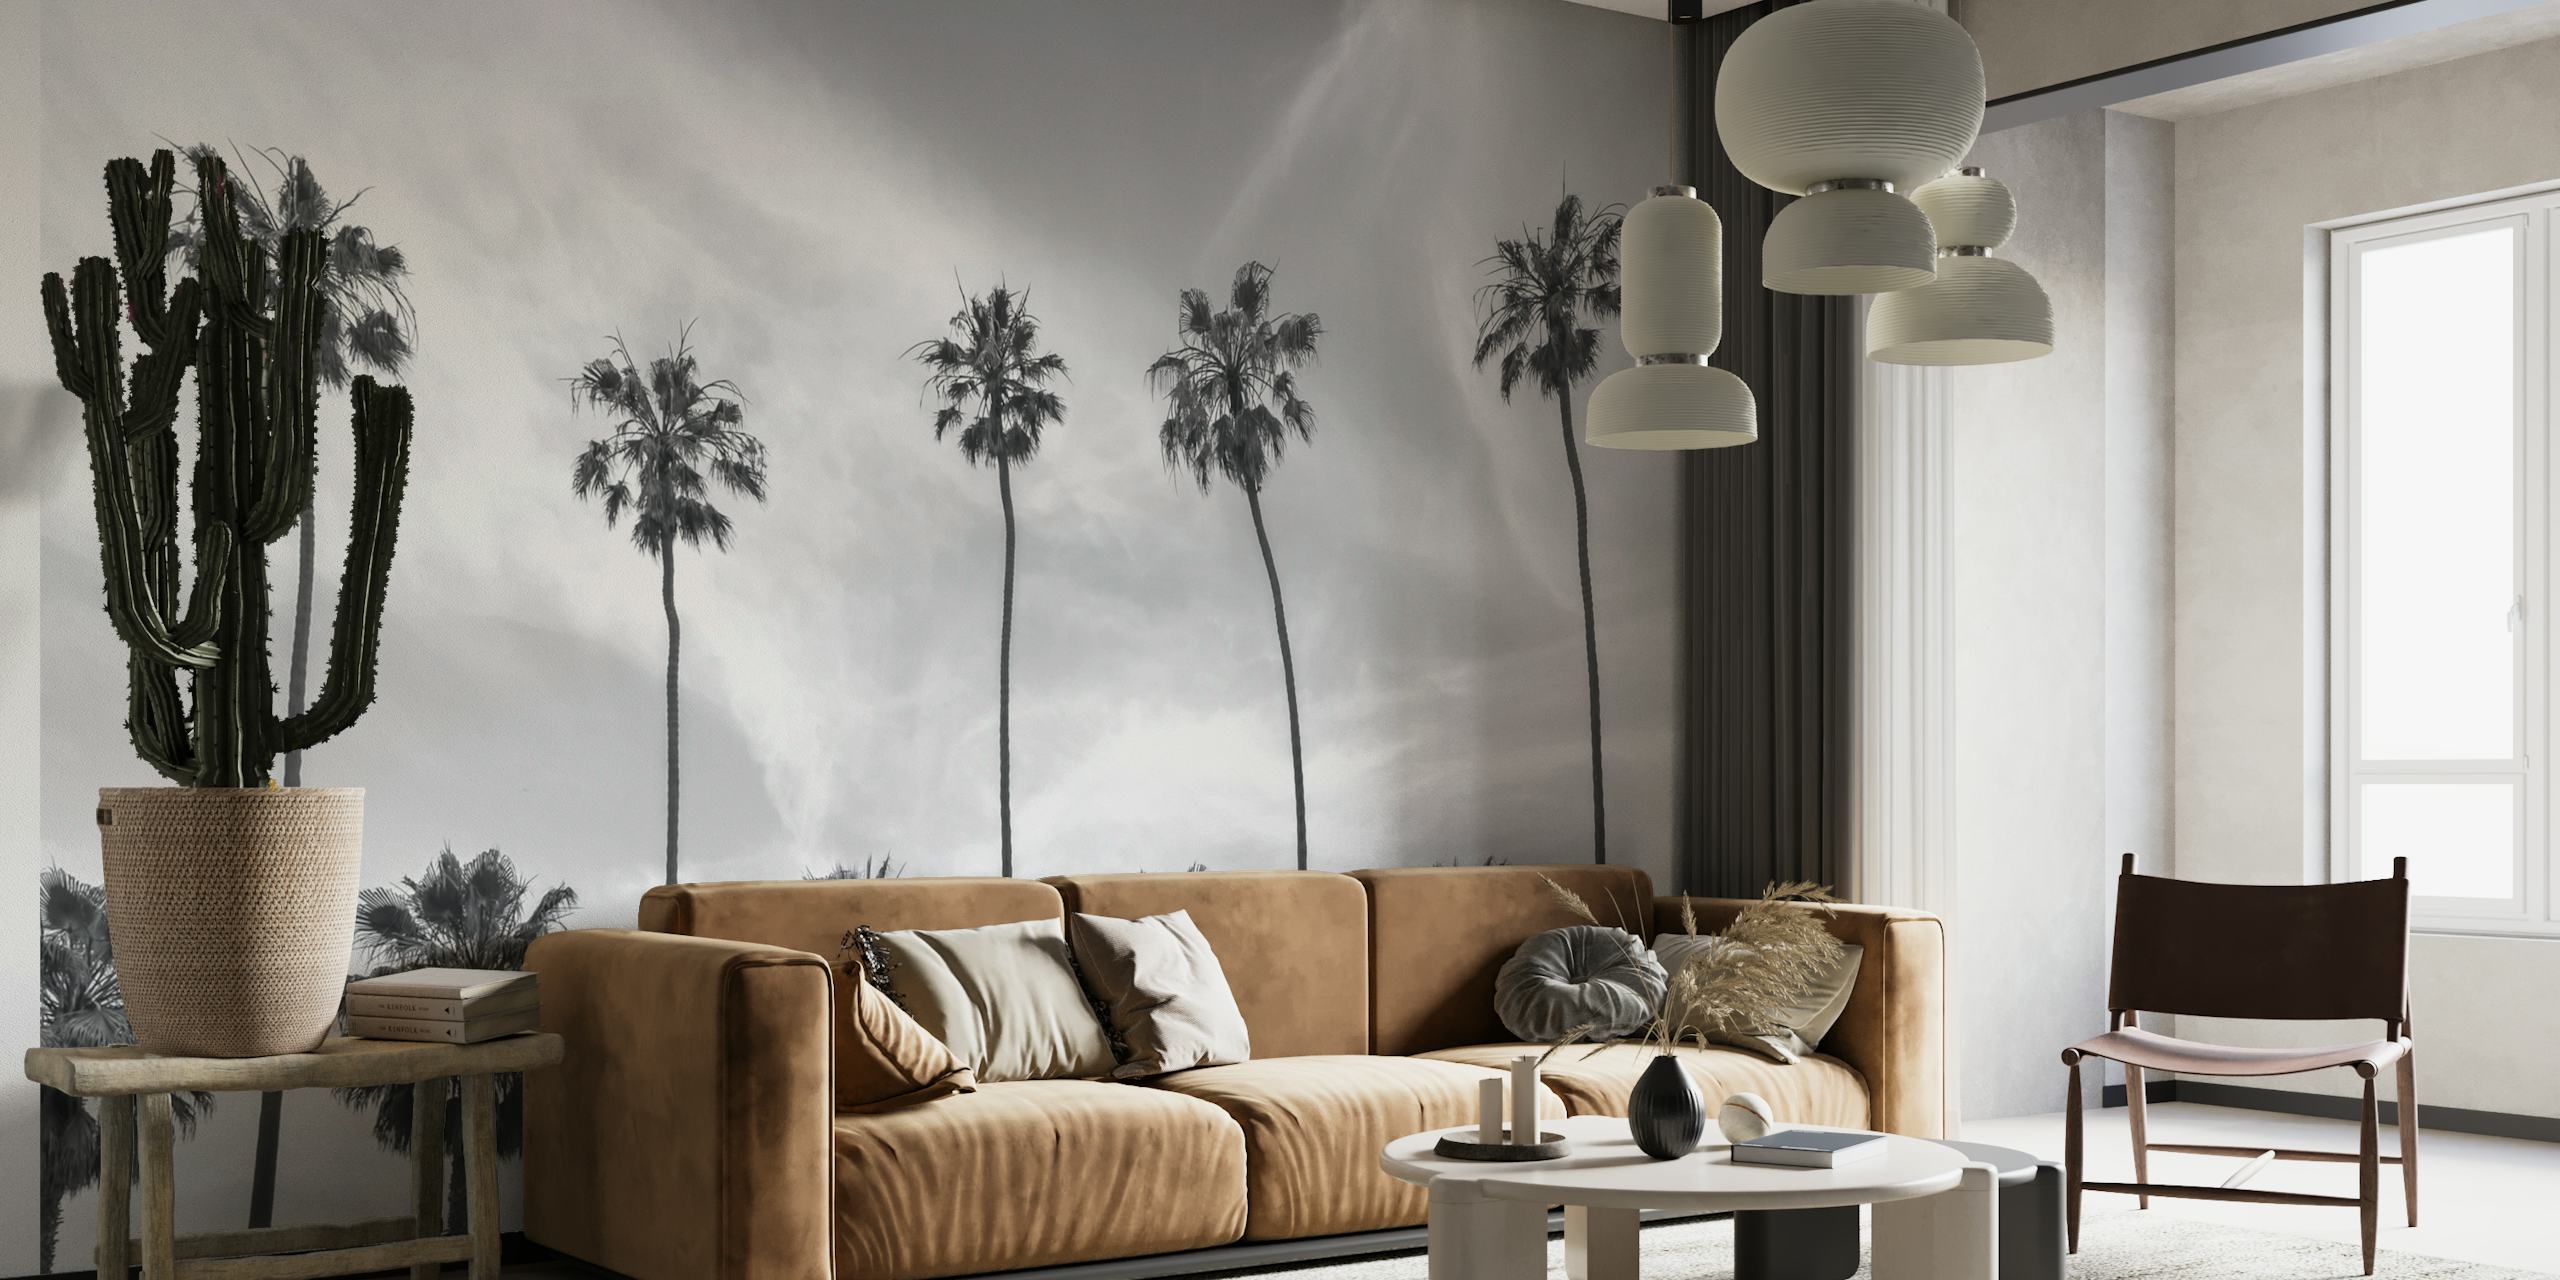 Monochrome palmboomsilhouetten tegen een muurschildering met kalme lucht